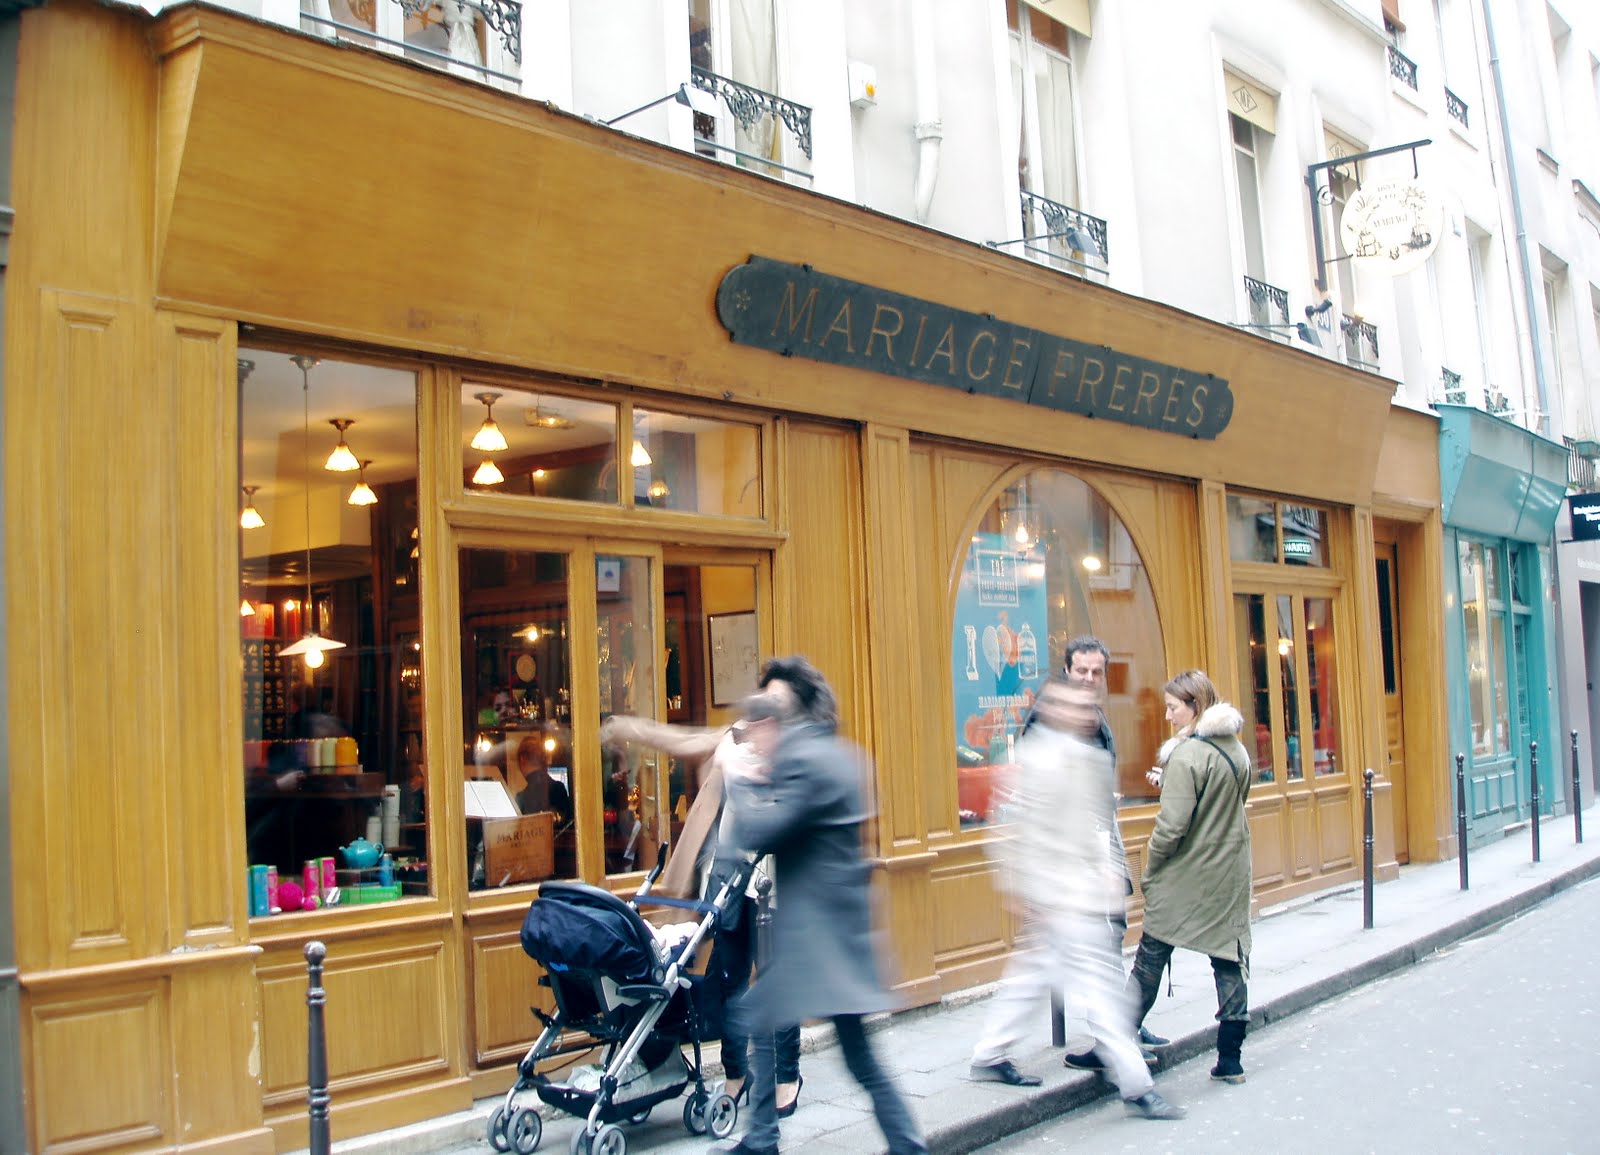 J'Adore: The Mariage Fréres Tea Shop in Paris - A Friend Afar